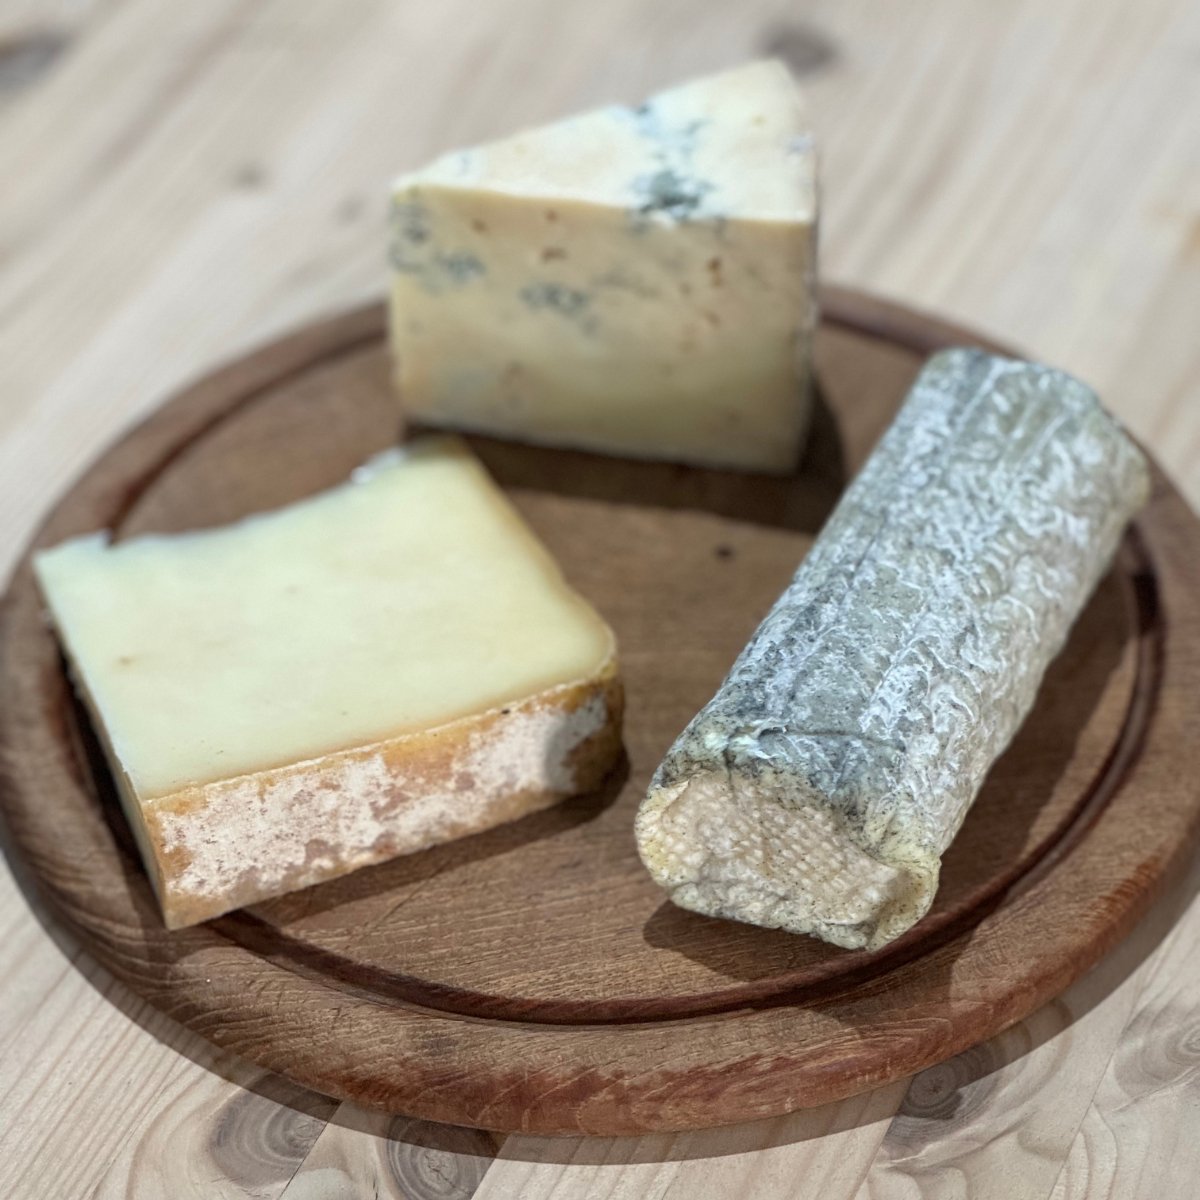 MadeScotland Errington Cheese Selection Box - Made Scotland